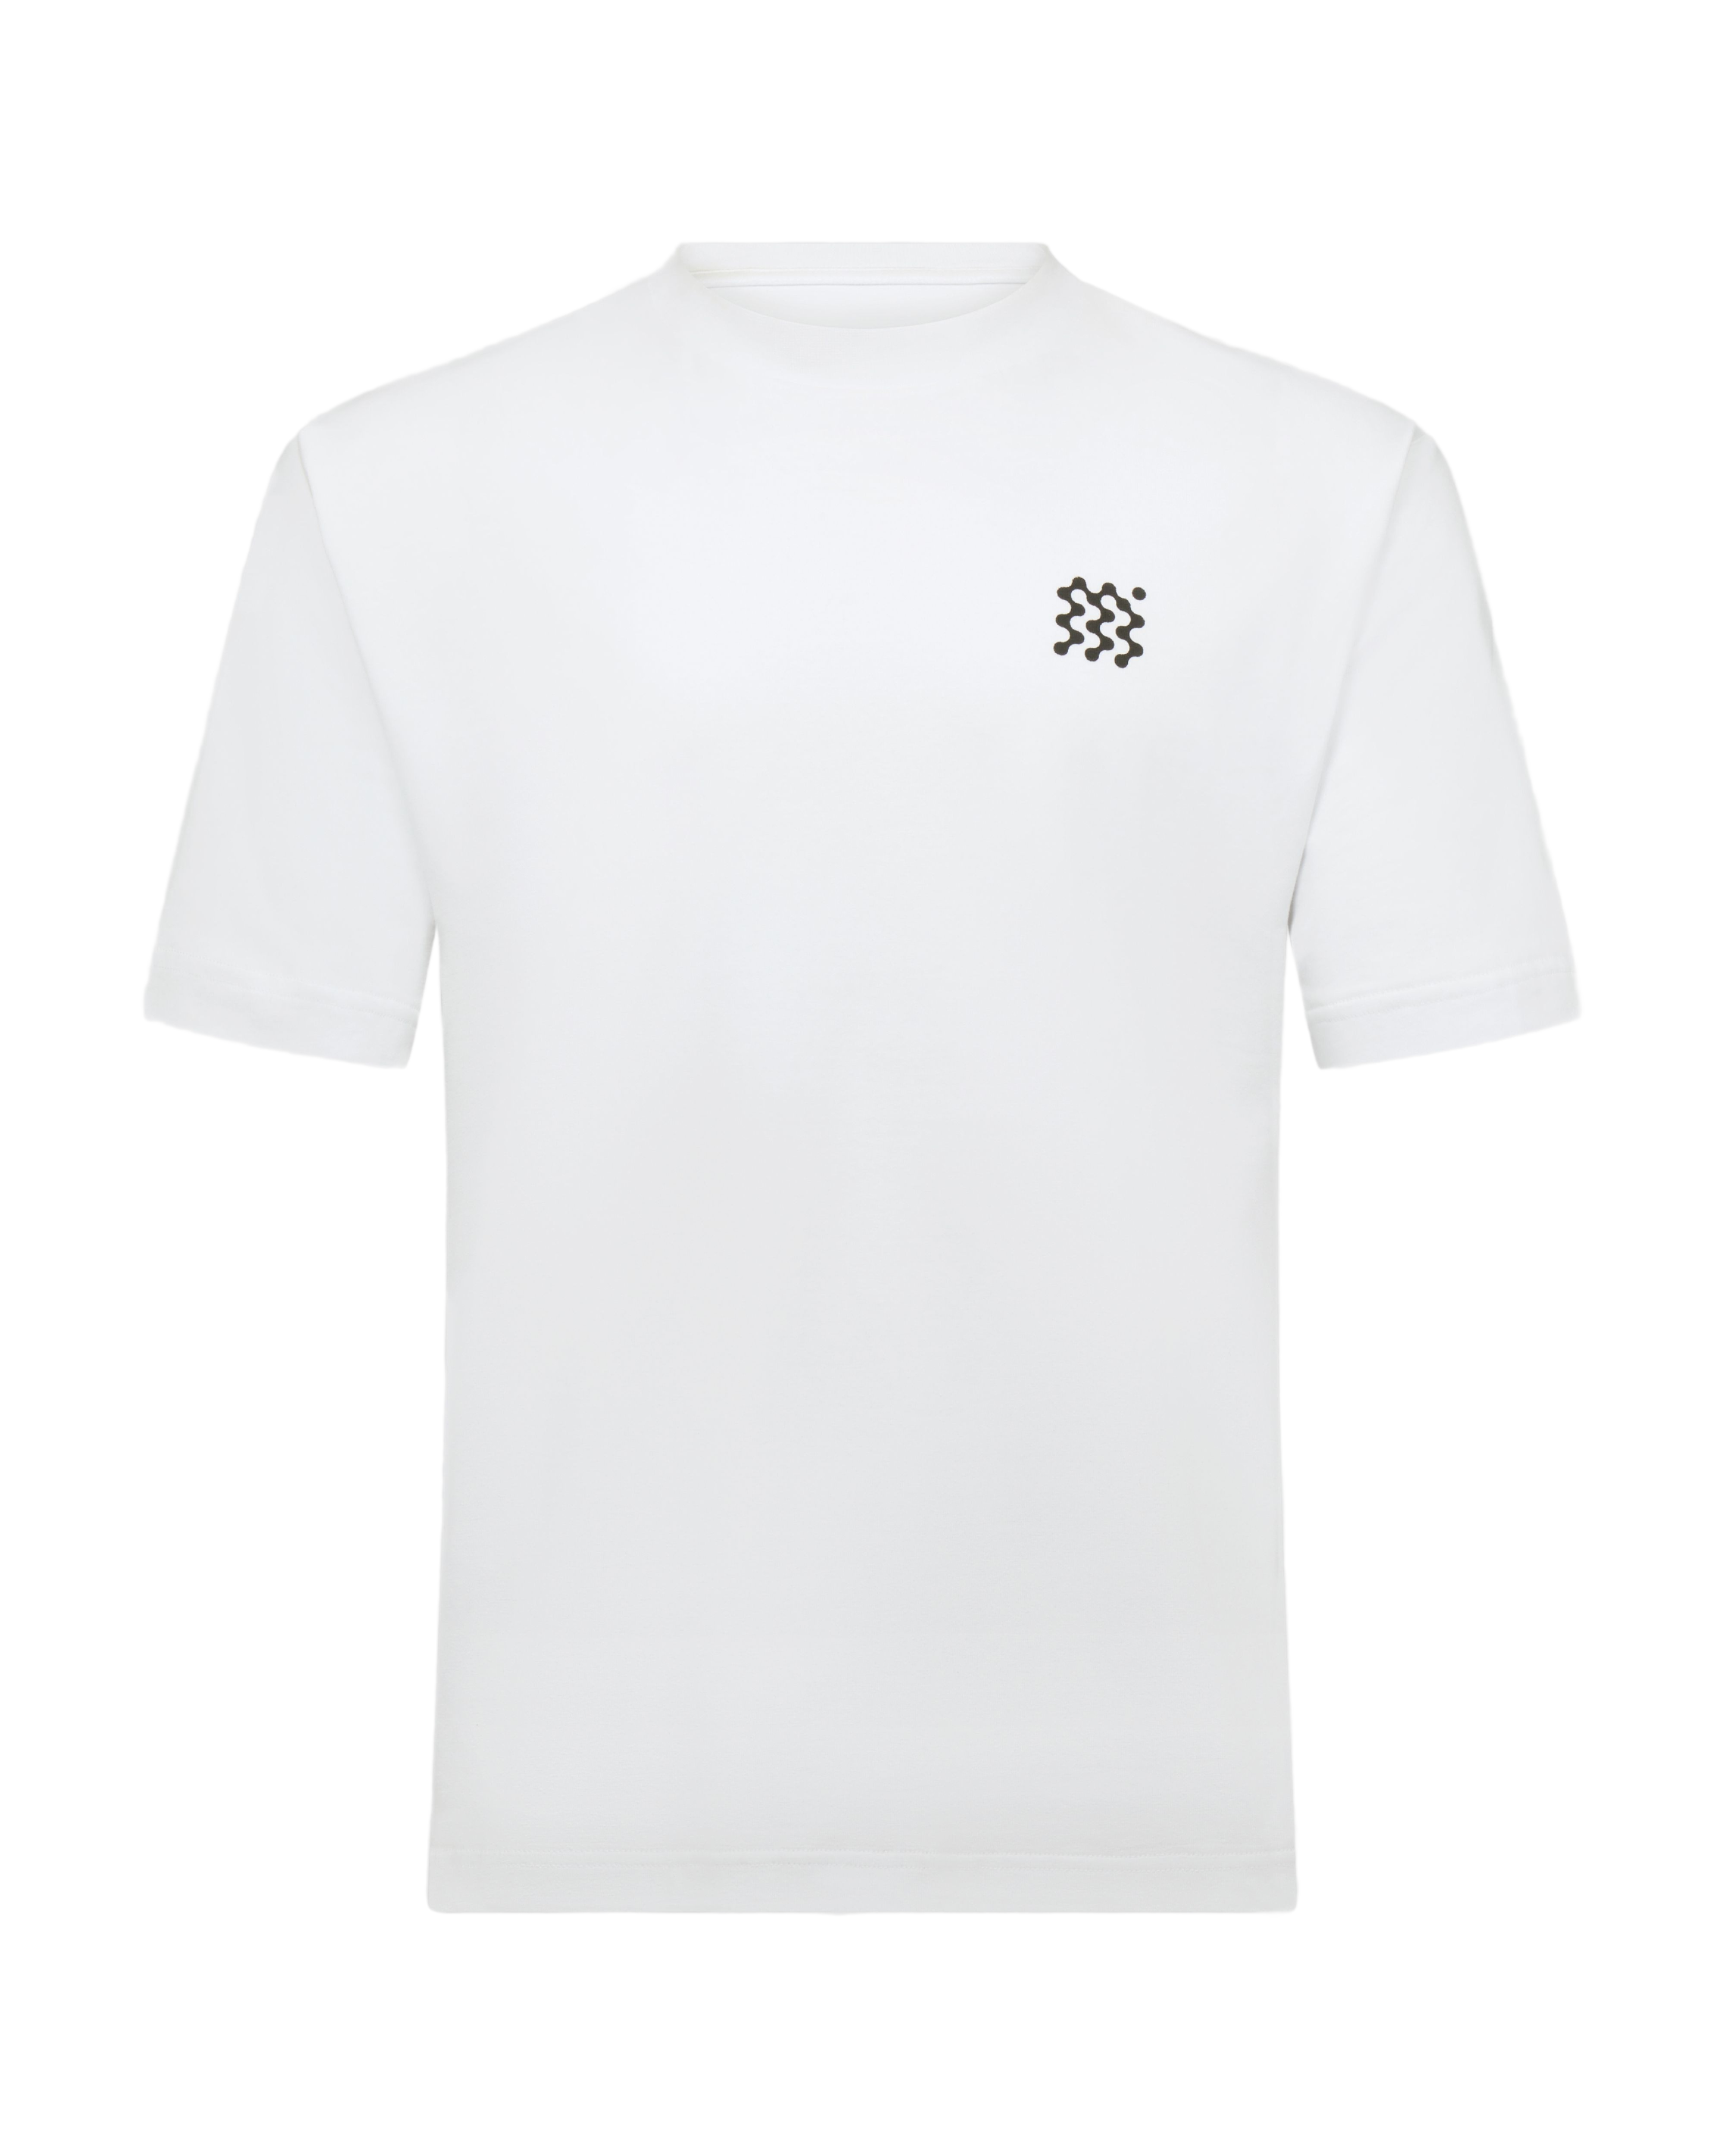 MANORS Men's MGA T-Shirt